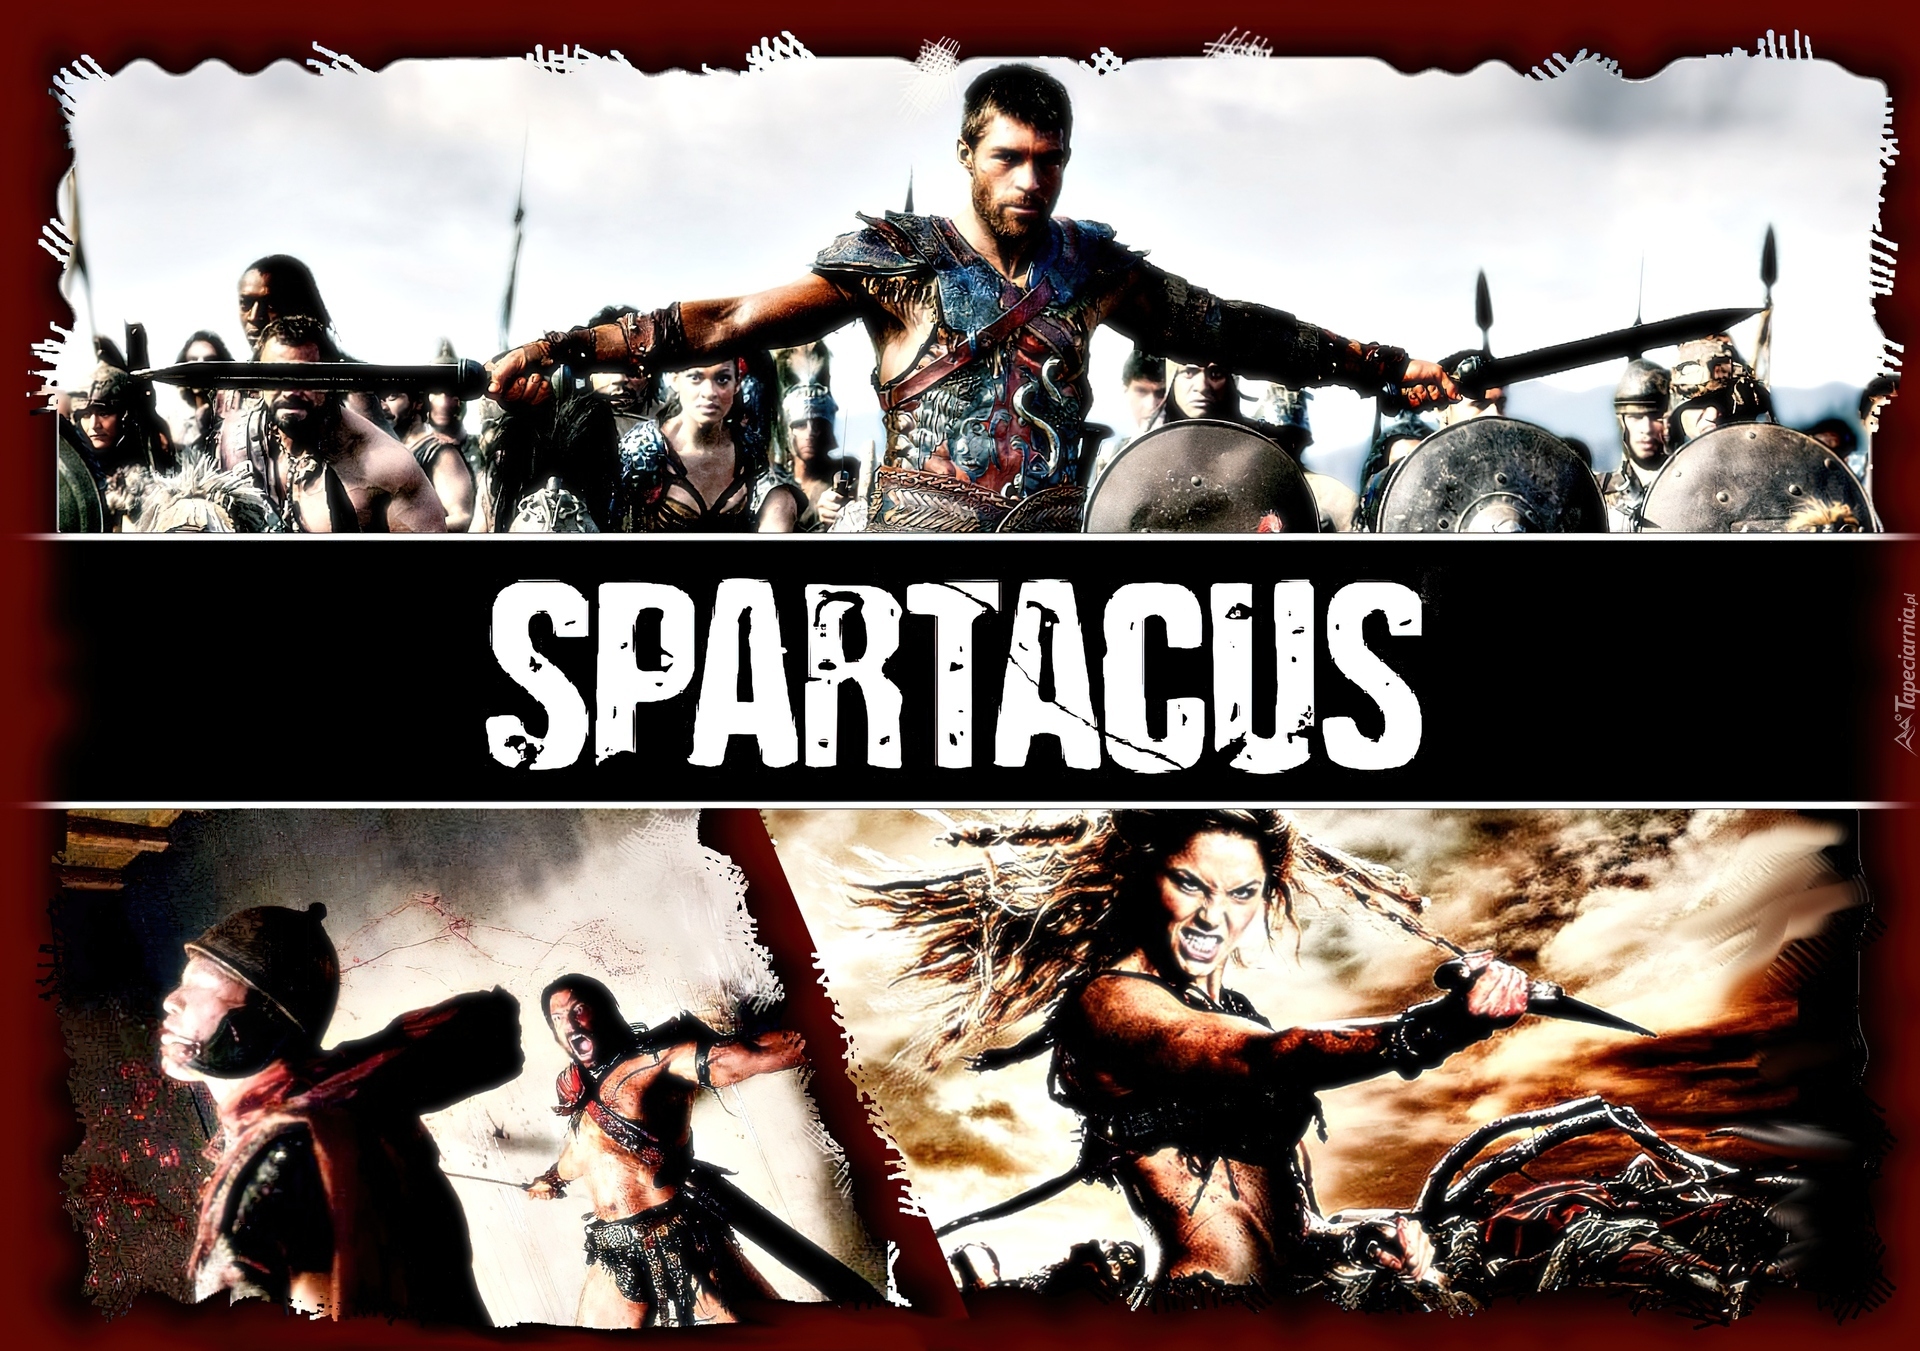 Serial, Spartacus, Saxa, Crixus, Walka